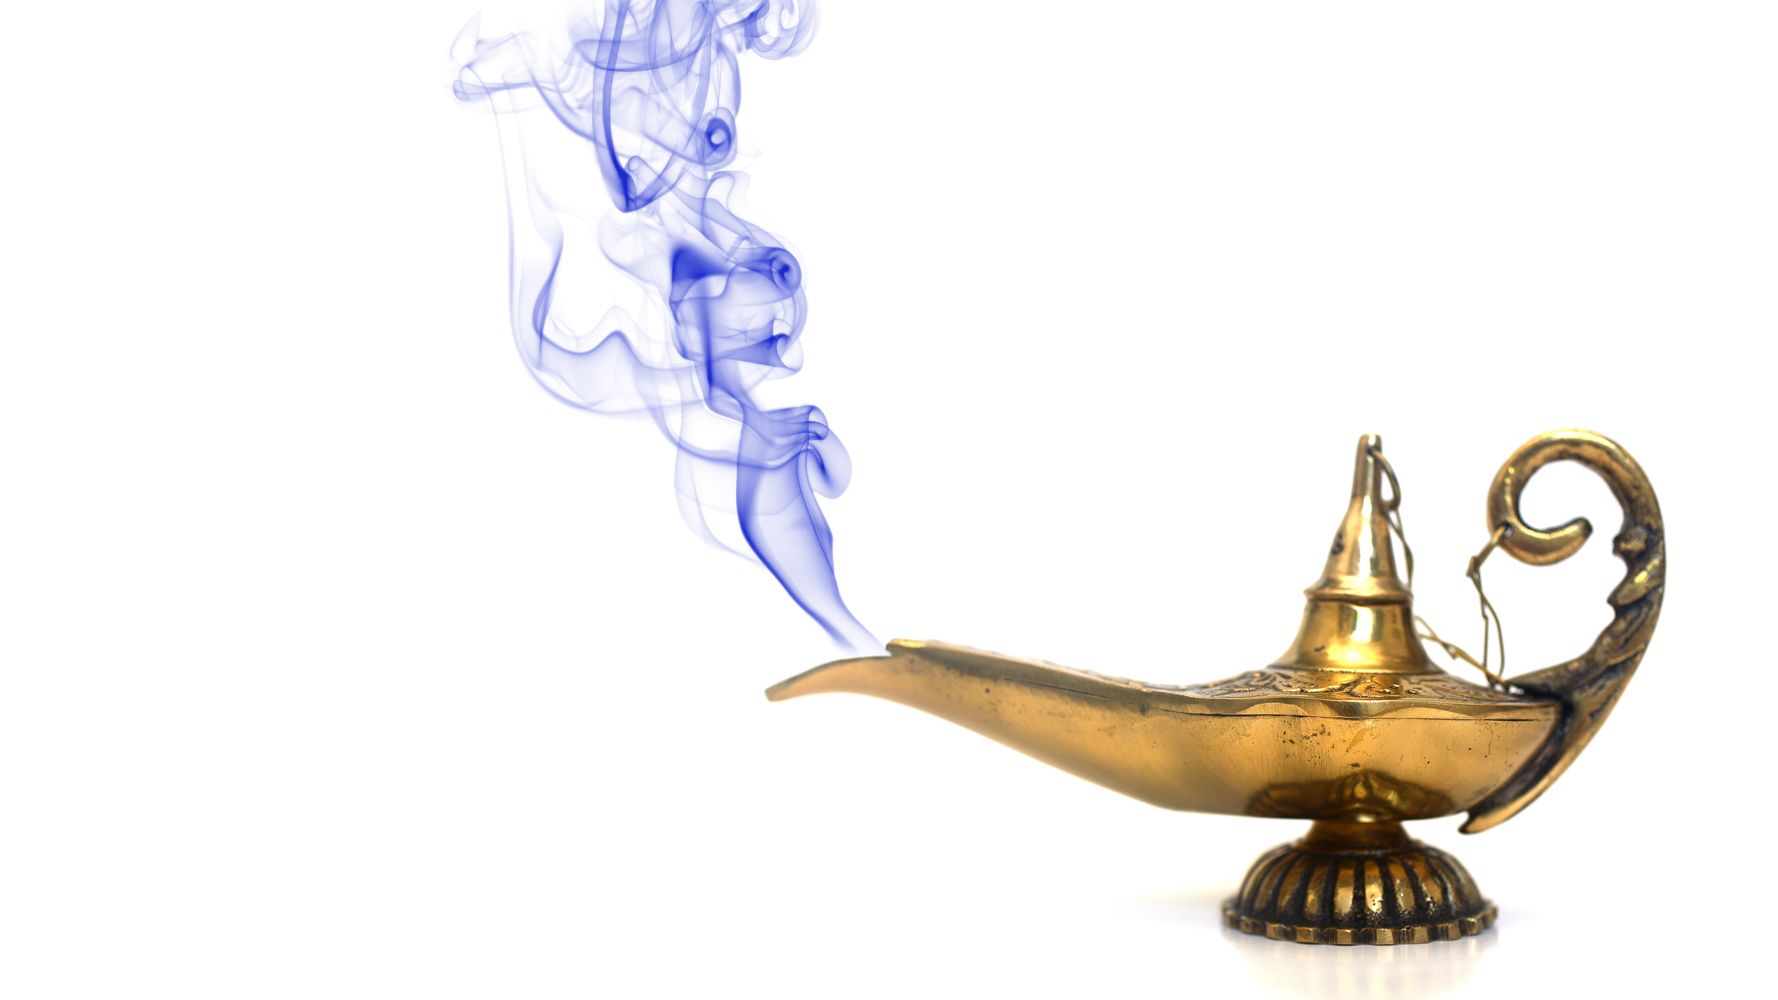 アラジンの魔法のランプ を数百万円で買わされる インドで起きた詐欺の手口とは ハフポスト